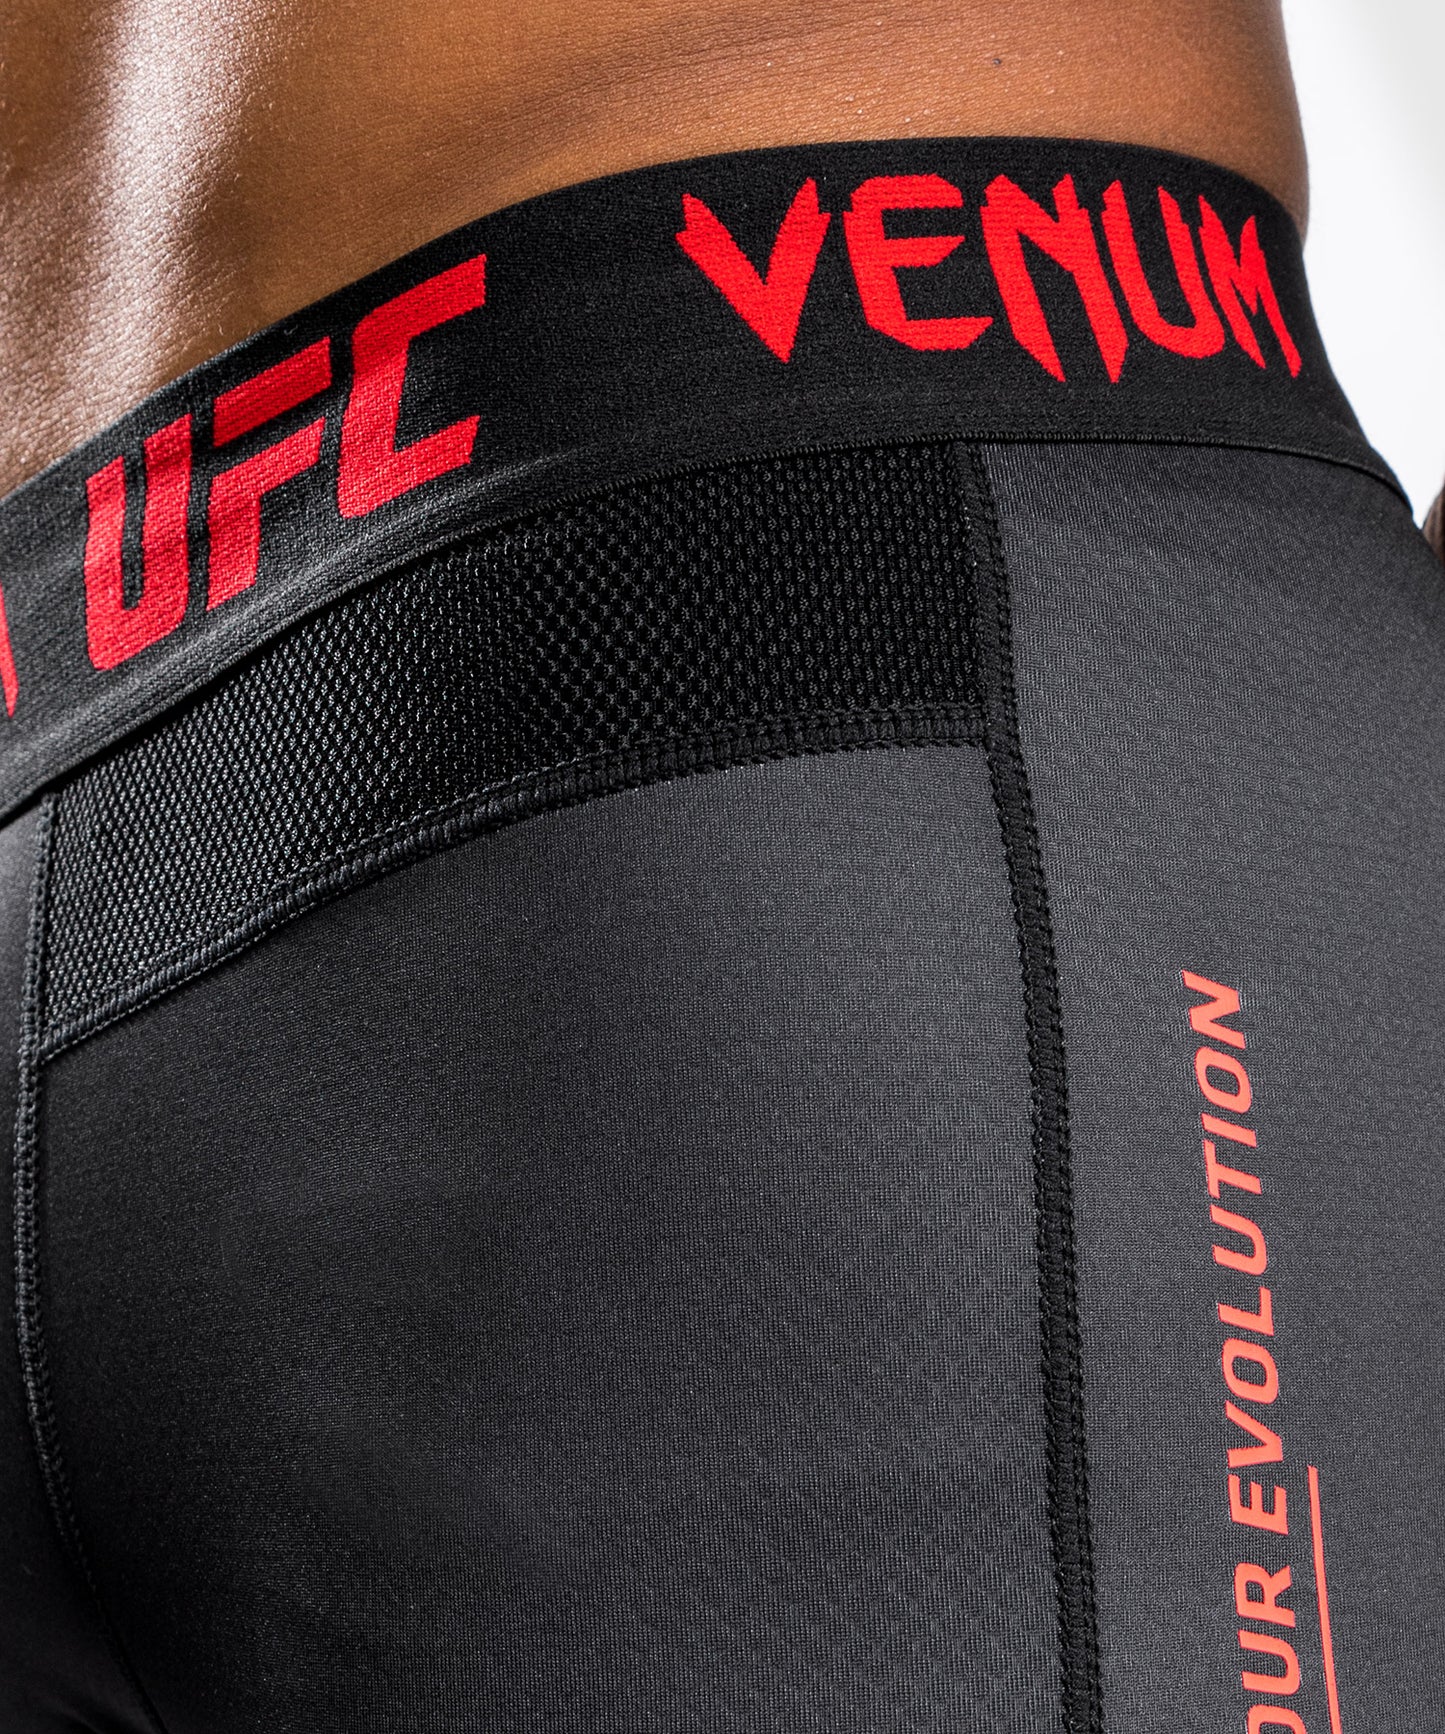 Venum UFCパフォーマンスインスティテュートコンプレッションパンツ-ブラック/レッド